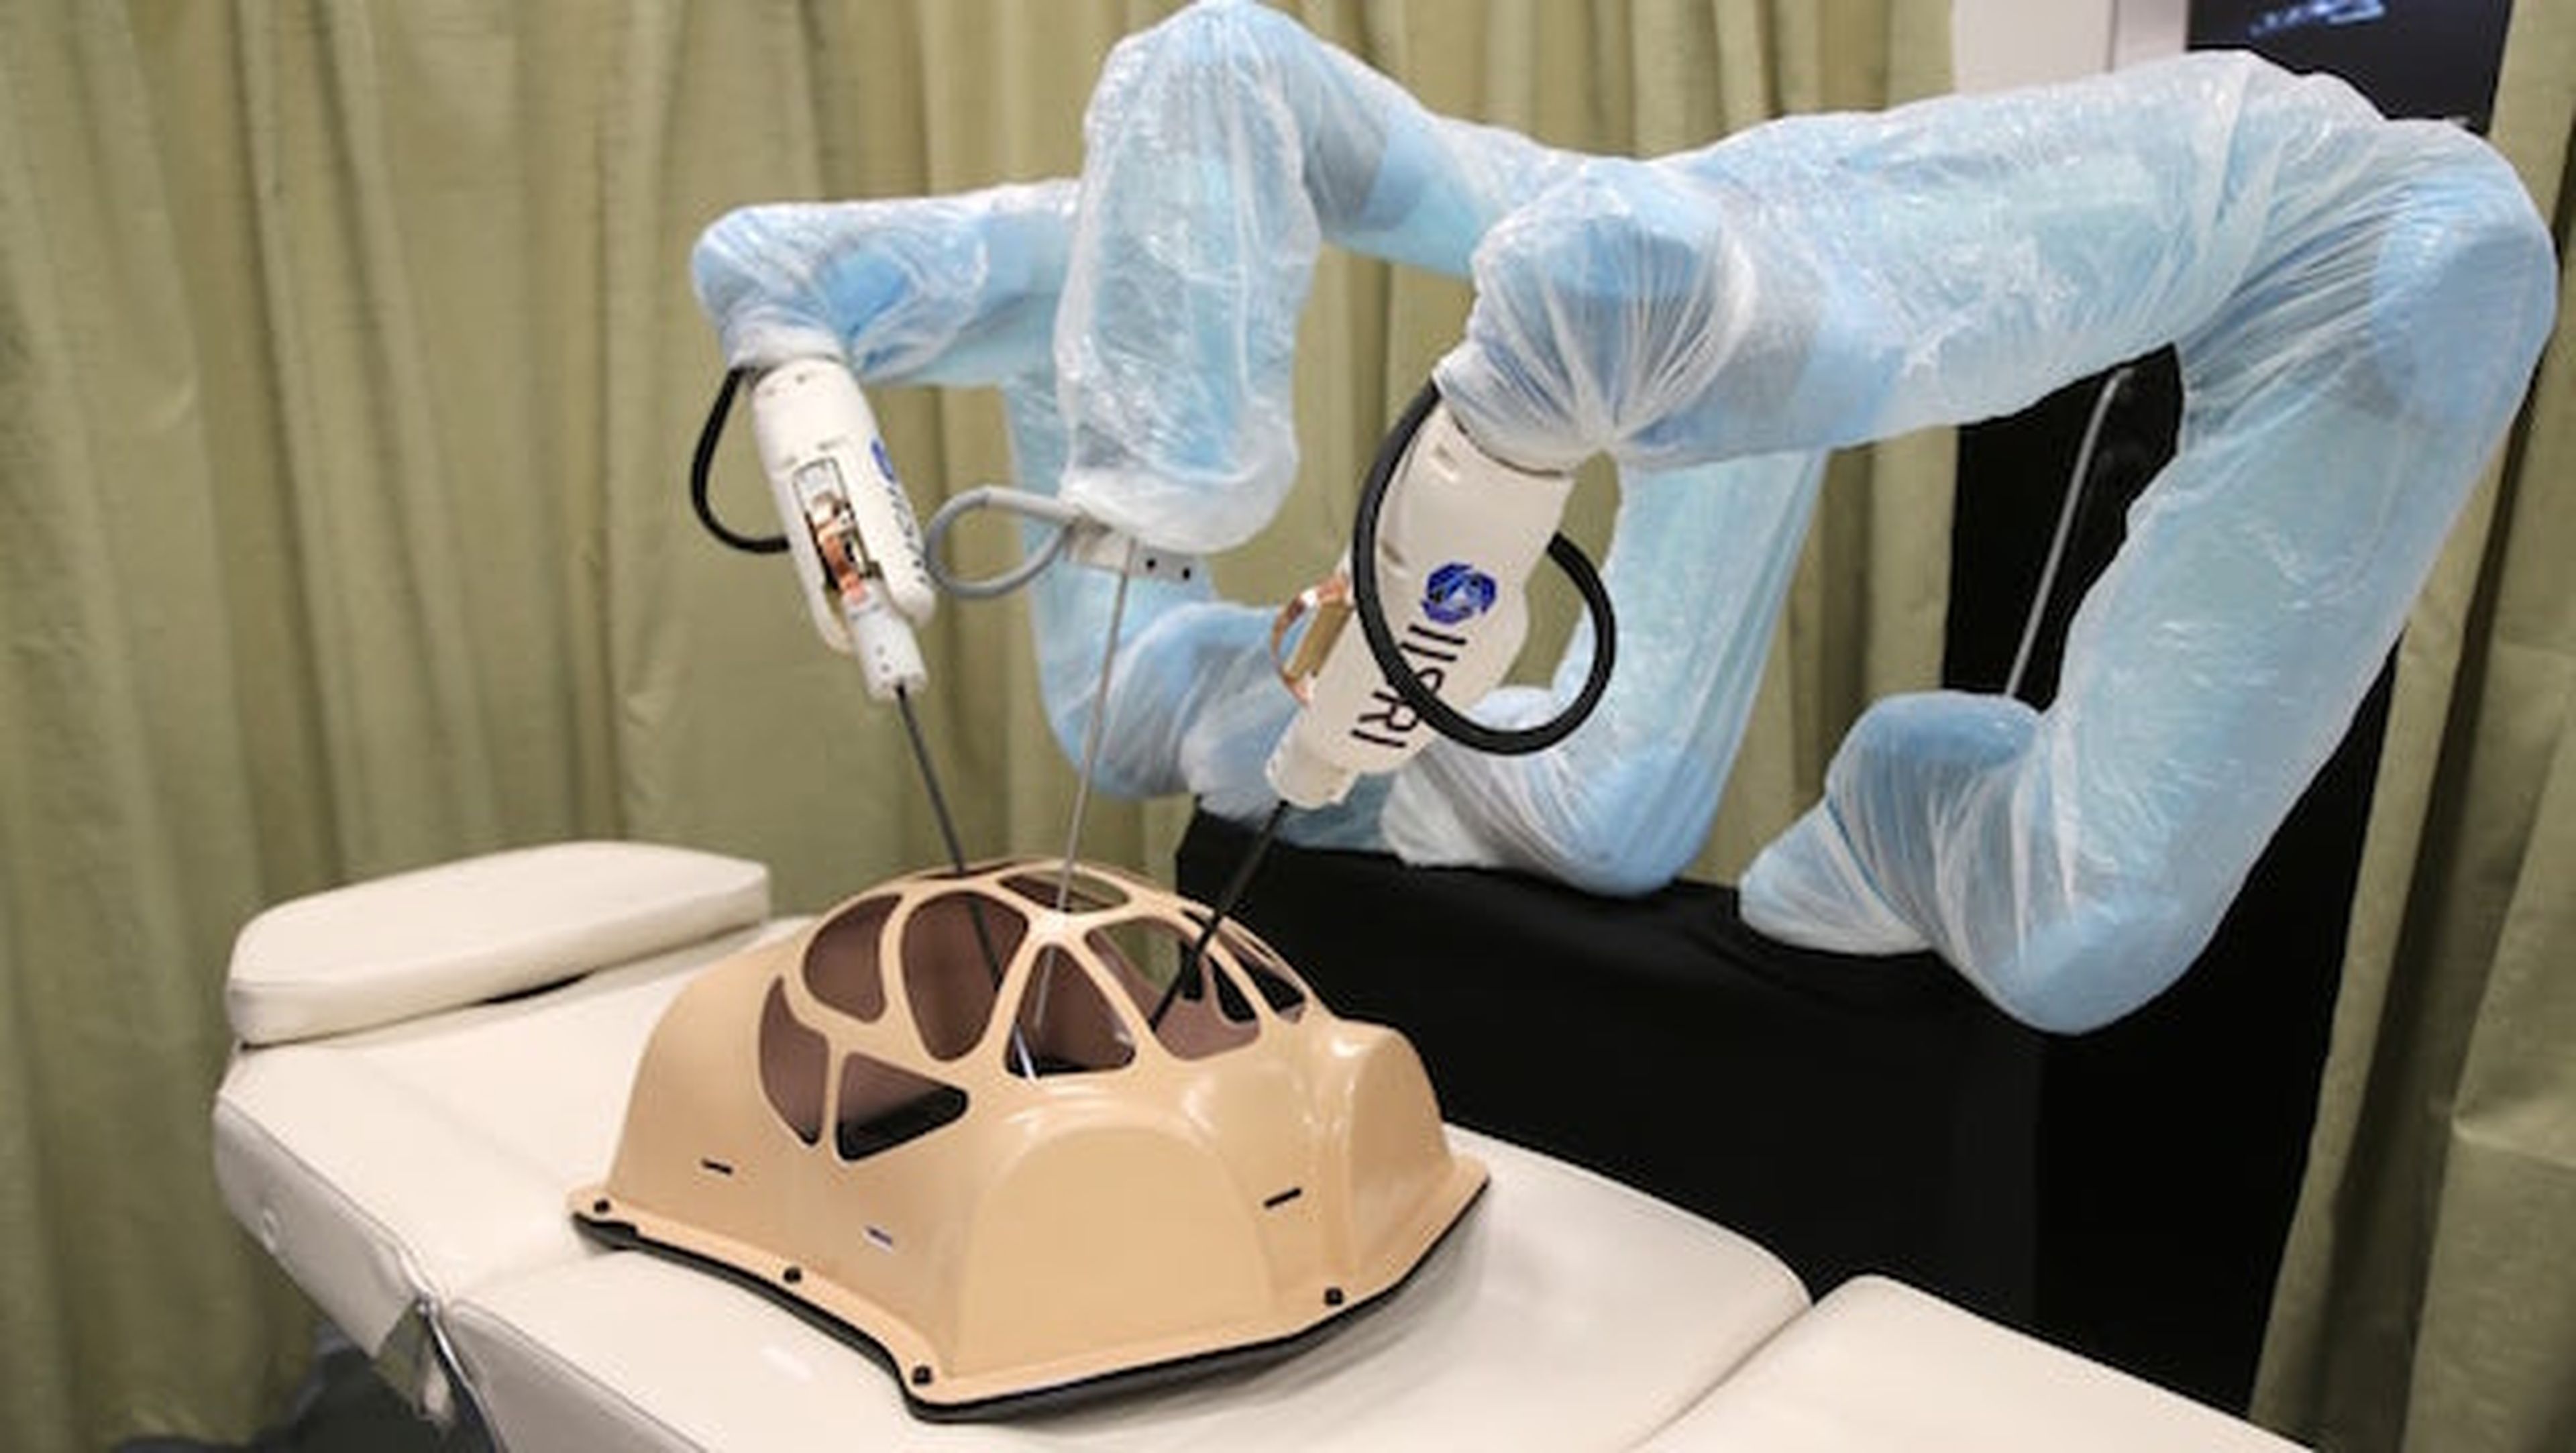 Tecnología de cirugía robótica ofrece retroalimentación háptica